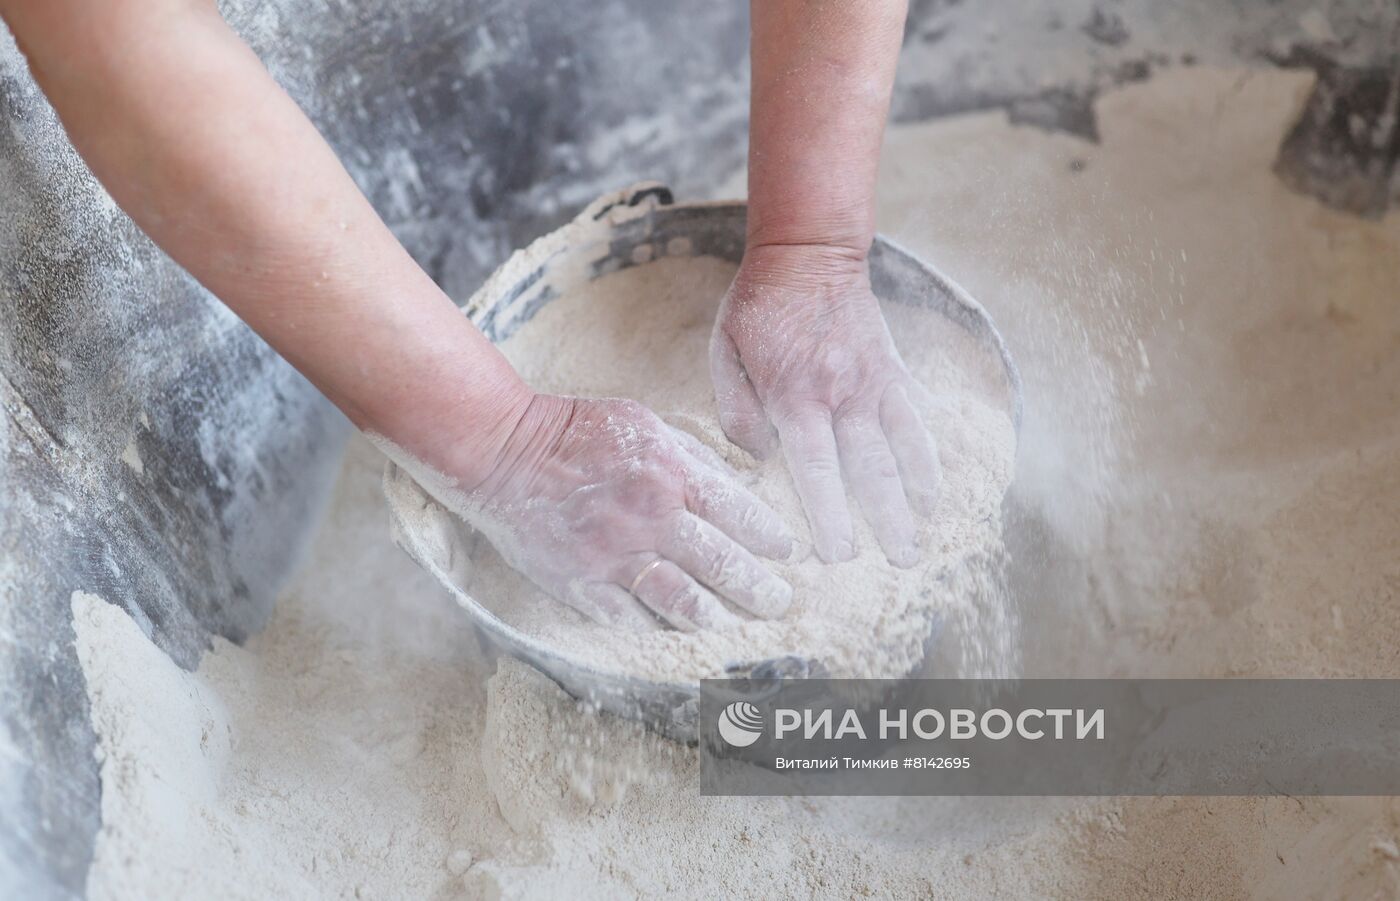 Работа Ахтырского хлебозавода в Краснодарском крае